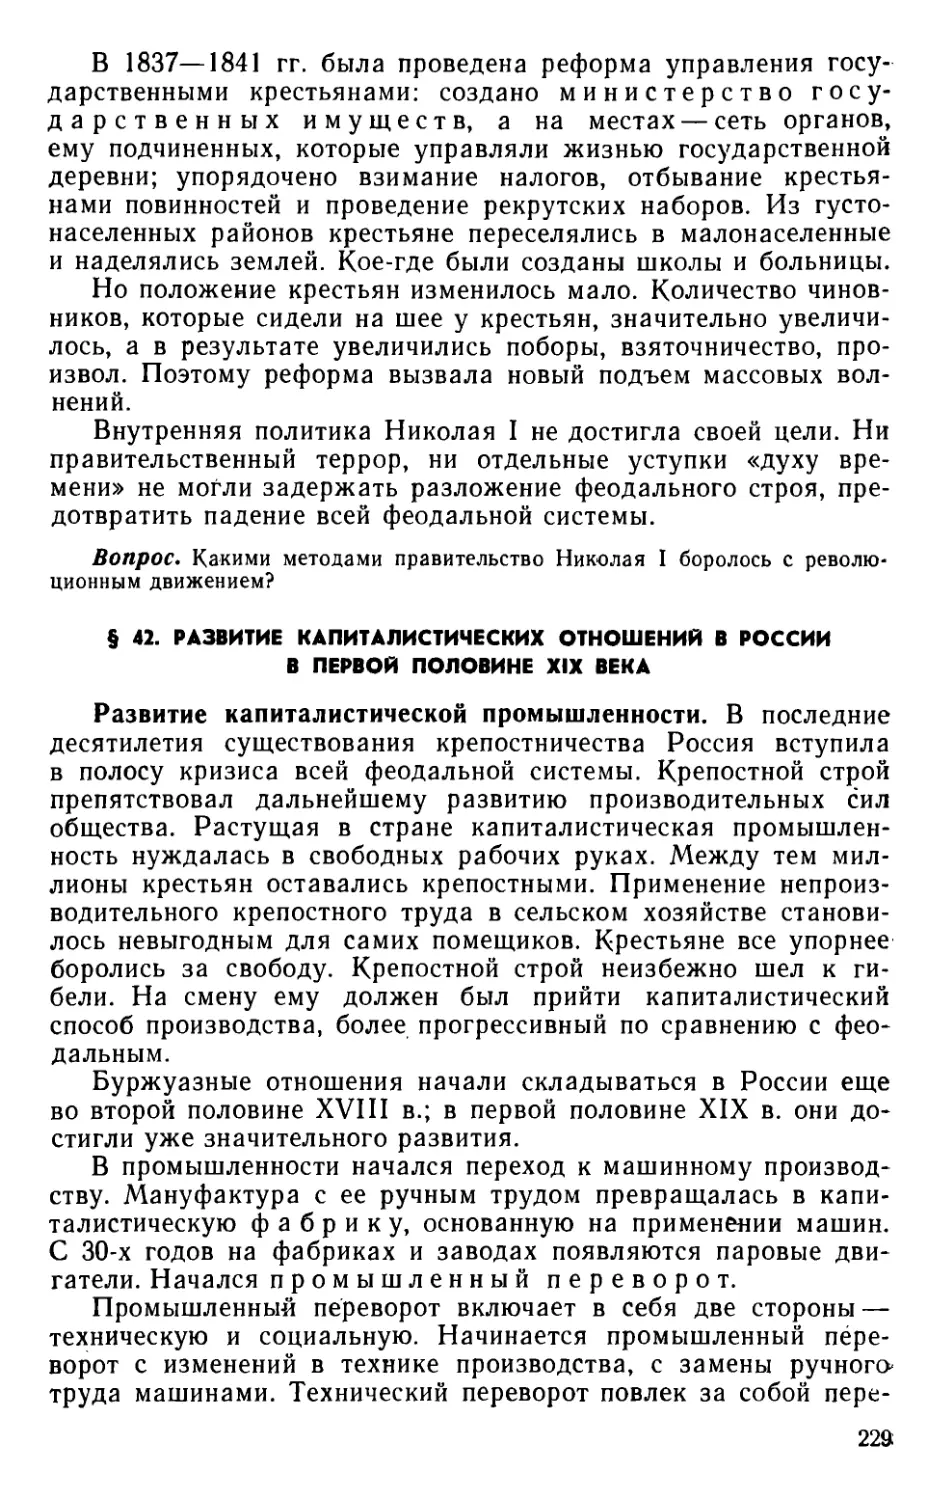 § 42. Развитие капиталистических отношений в России в первой половине XIX века